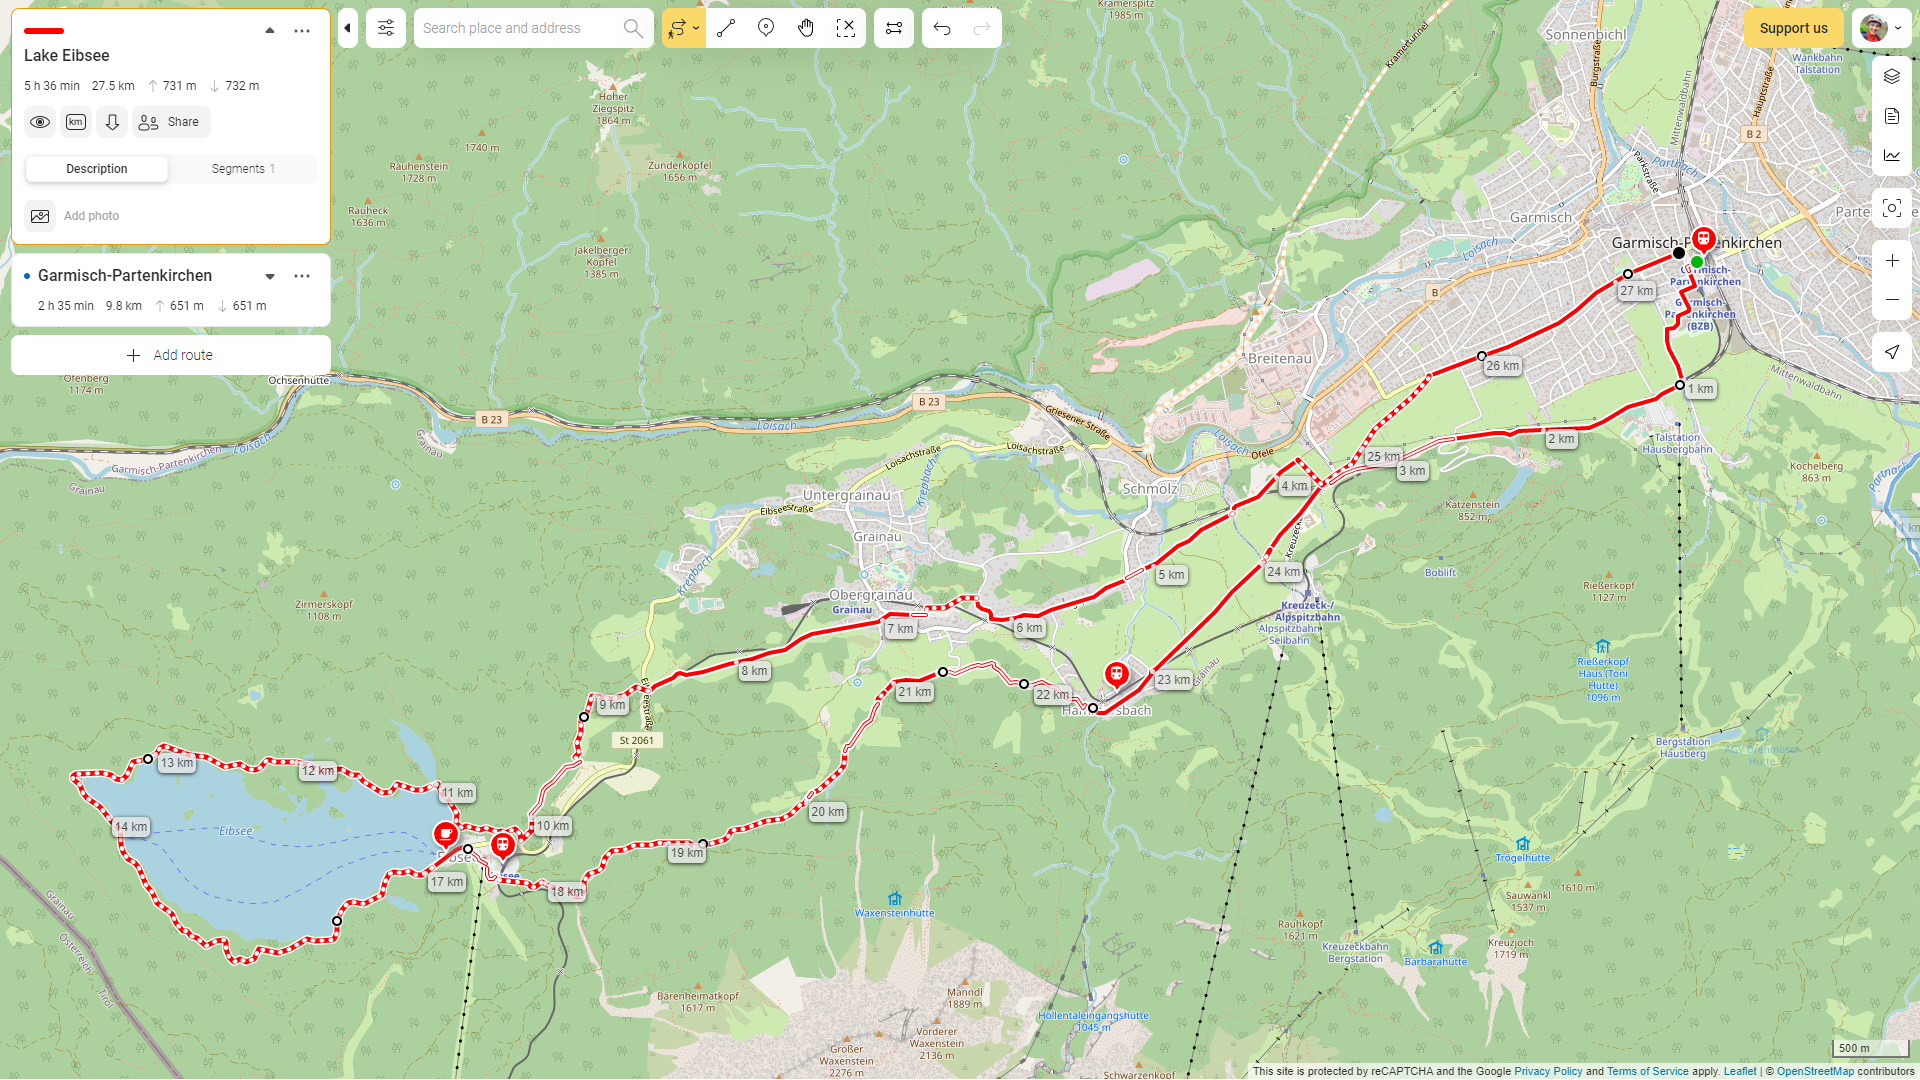 Как мы с друзьями собрали сервис для построения маршрутов для походов и велопутешествий ActiveTrip.me - 1